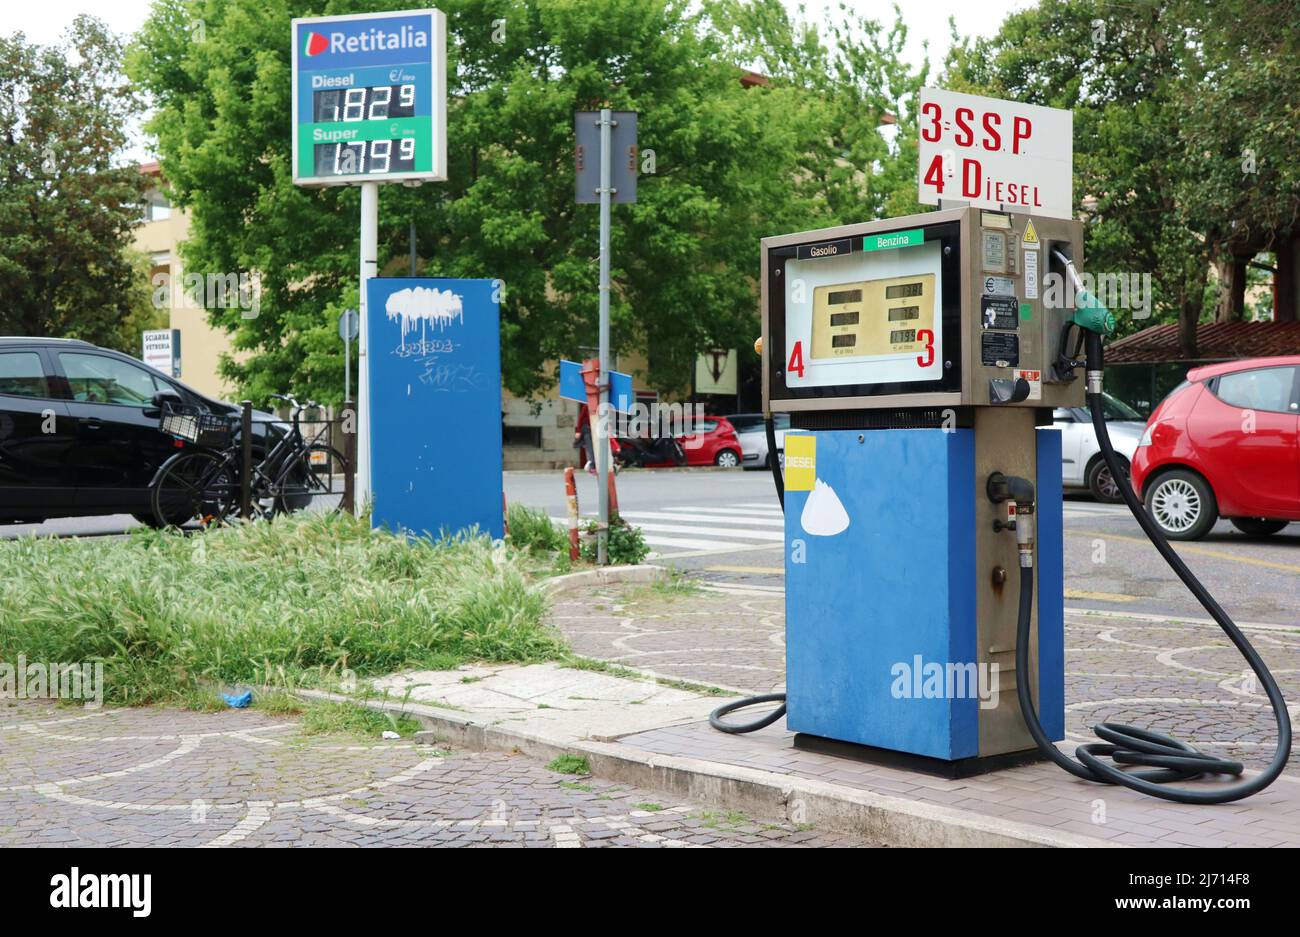 Preise an einer Tankstelle in Rom, Italien, Mai 4 2022. Die italienische Regierung hat kürzlich ein Dekret verabschiedet, das die "Verbrauchsteuern" auf Benzin, Diesel und Flüssiggas von Mai 3 bis mindestens Juli 8 um etwa 0,30 Euro senkt. Darüber hinaus wird die Erdgasversorgung von einem Rabatt auf die Mehrwertsteuer profitieren. Seit Februar, als der Konflikt zwischen Russland und der Ukraine begann, sind die Preise für Kraftstoff und Gas in Italien in die Höhe geschossen, da Russland der größte Erdgashändler und ein führender Erdöllieferant des Landes war. In den letzten Wochen hat Italien neue Gasversorgungsabkommen mit anderen Ländern unterzeichnet, wie Alge Stockfoto